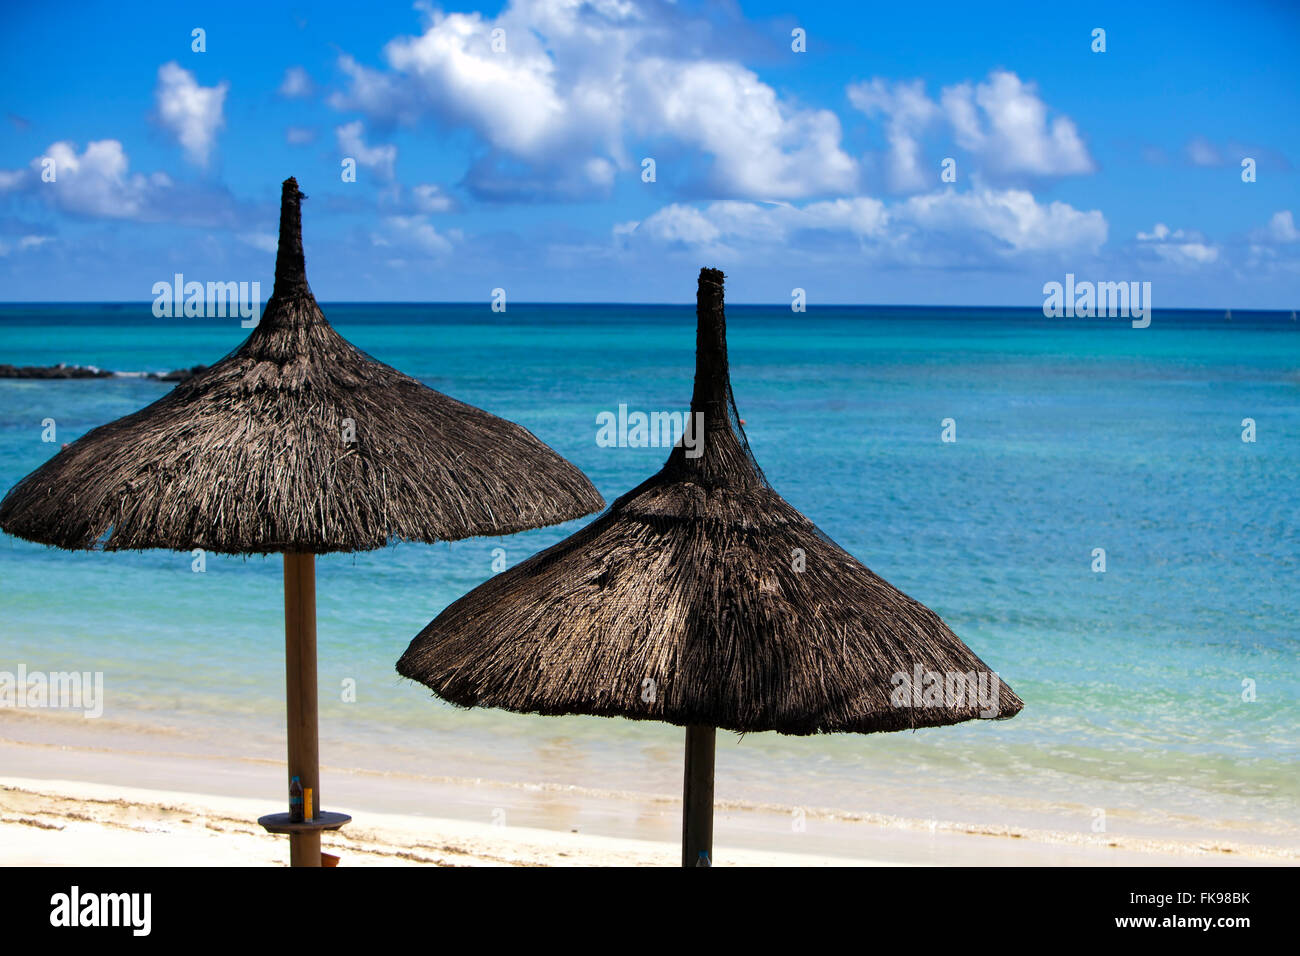 Sun protection umbrellas, beach, sea Stock Photo